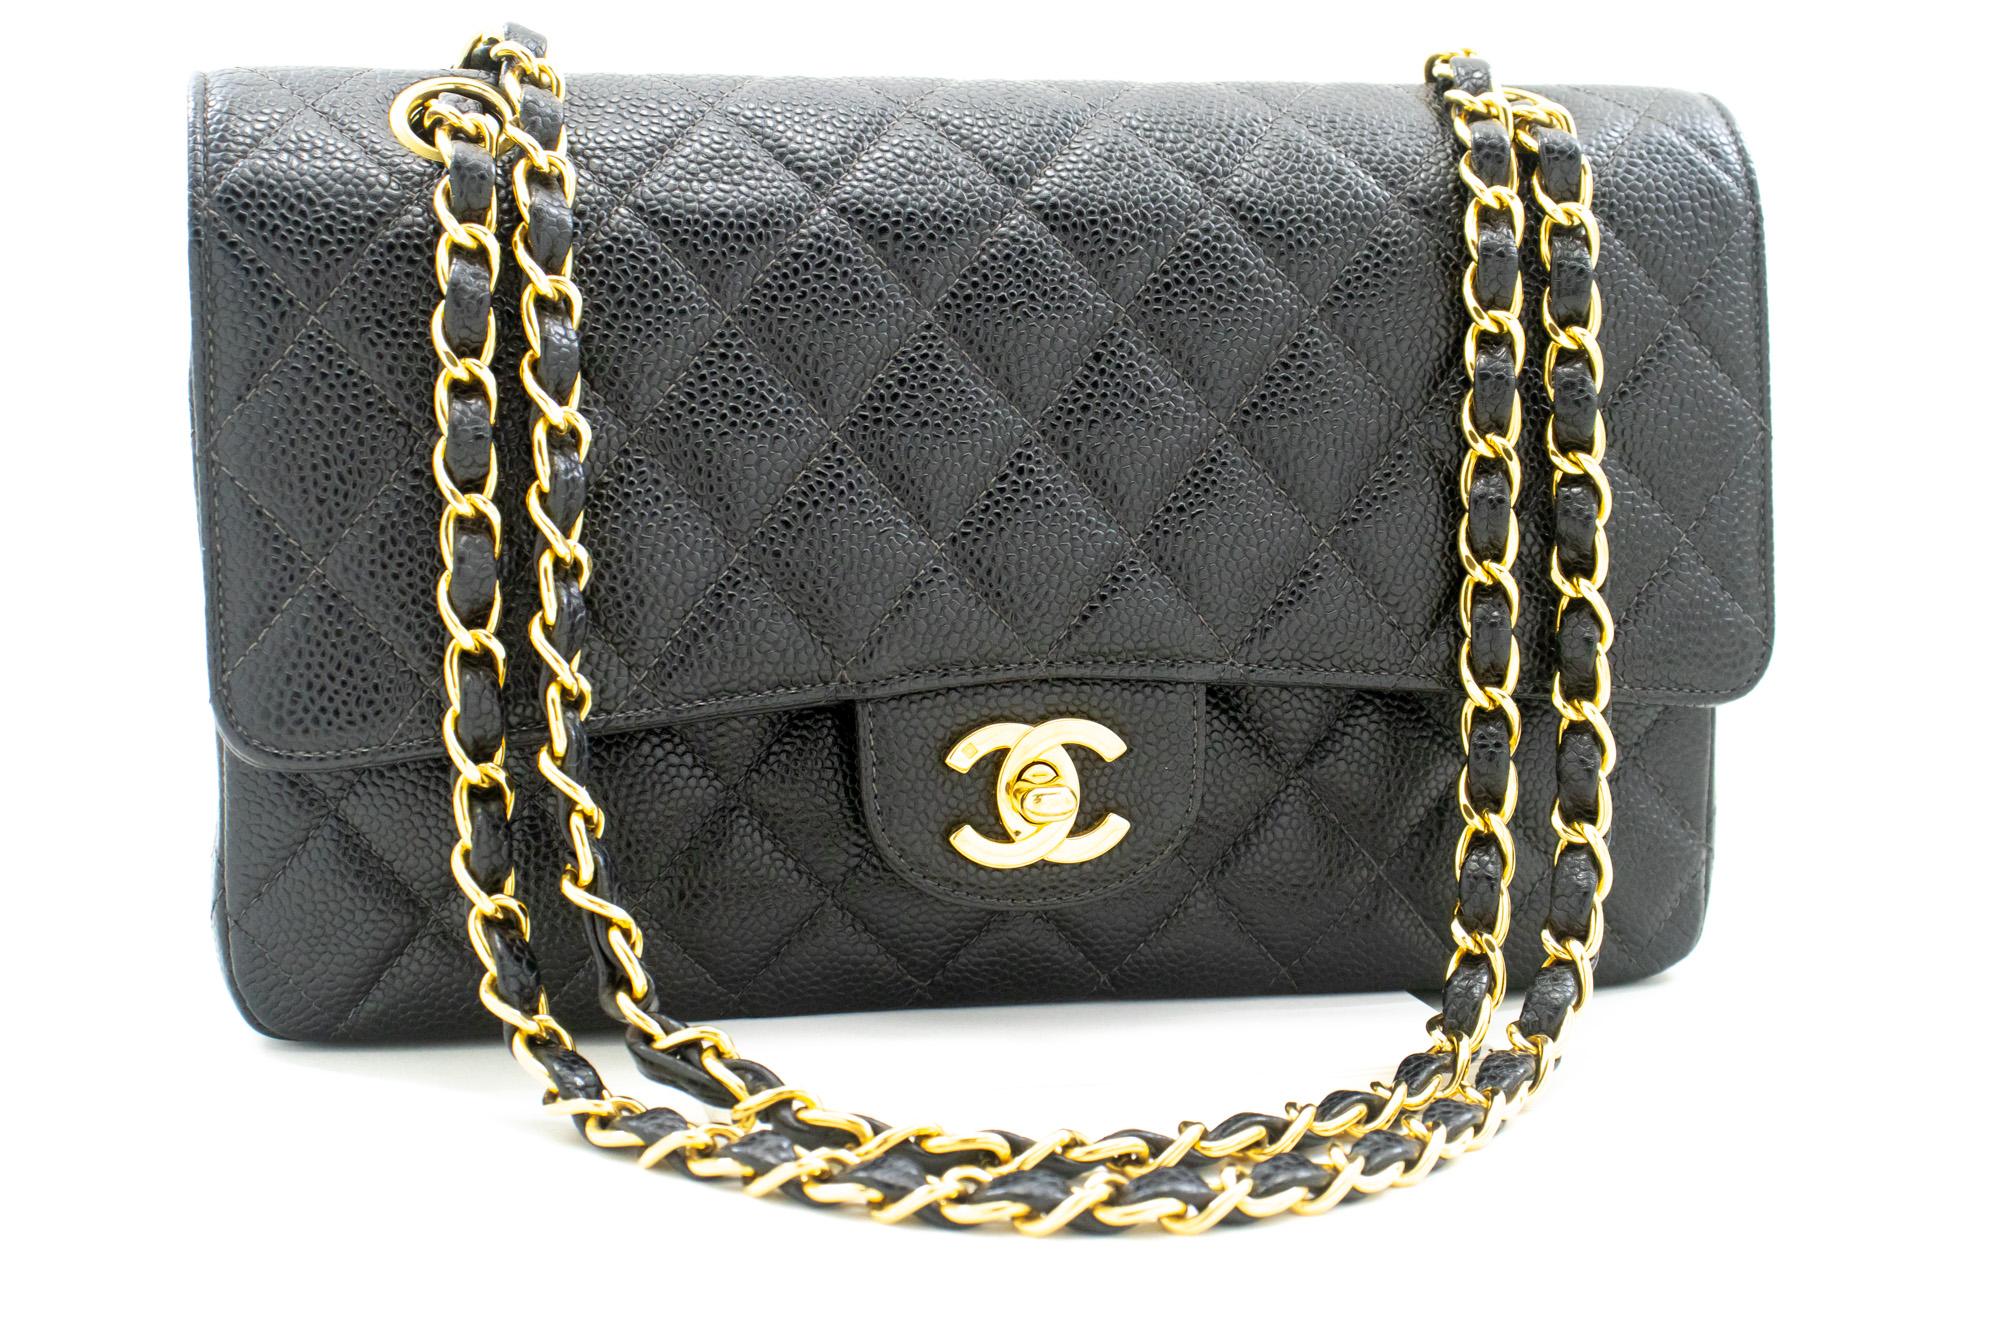 Authentique Chanel Classic Double Flap Medium Chain Shoulder Bag Black Caviar. La couleur est noire. Le matériau extérieur est le cuir. Le motif est solide. Cet article est un Vintage / Classique. L'année de fabrication serait 2000-2 0 0 2